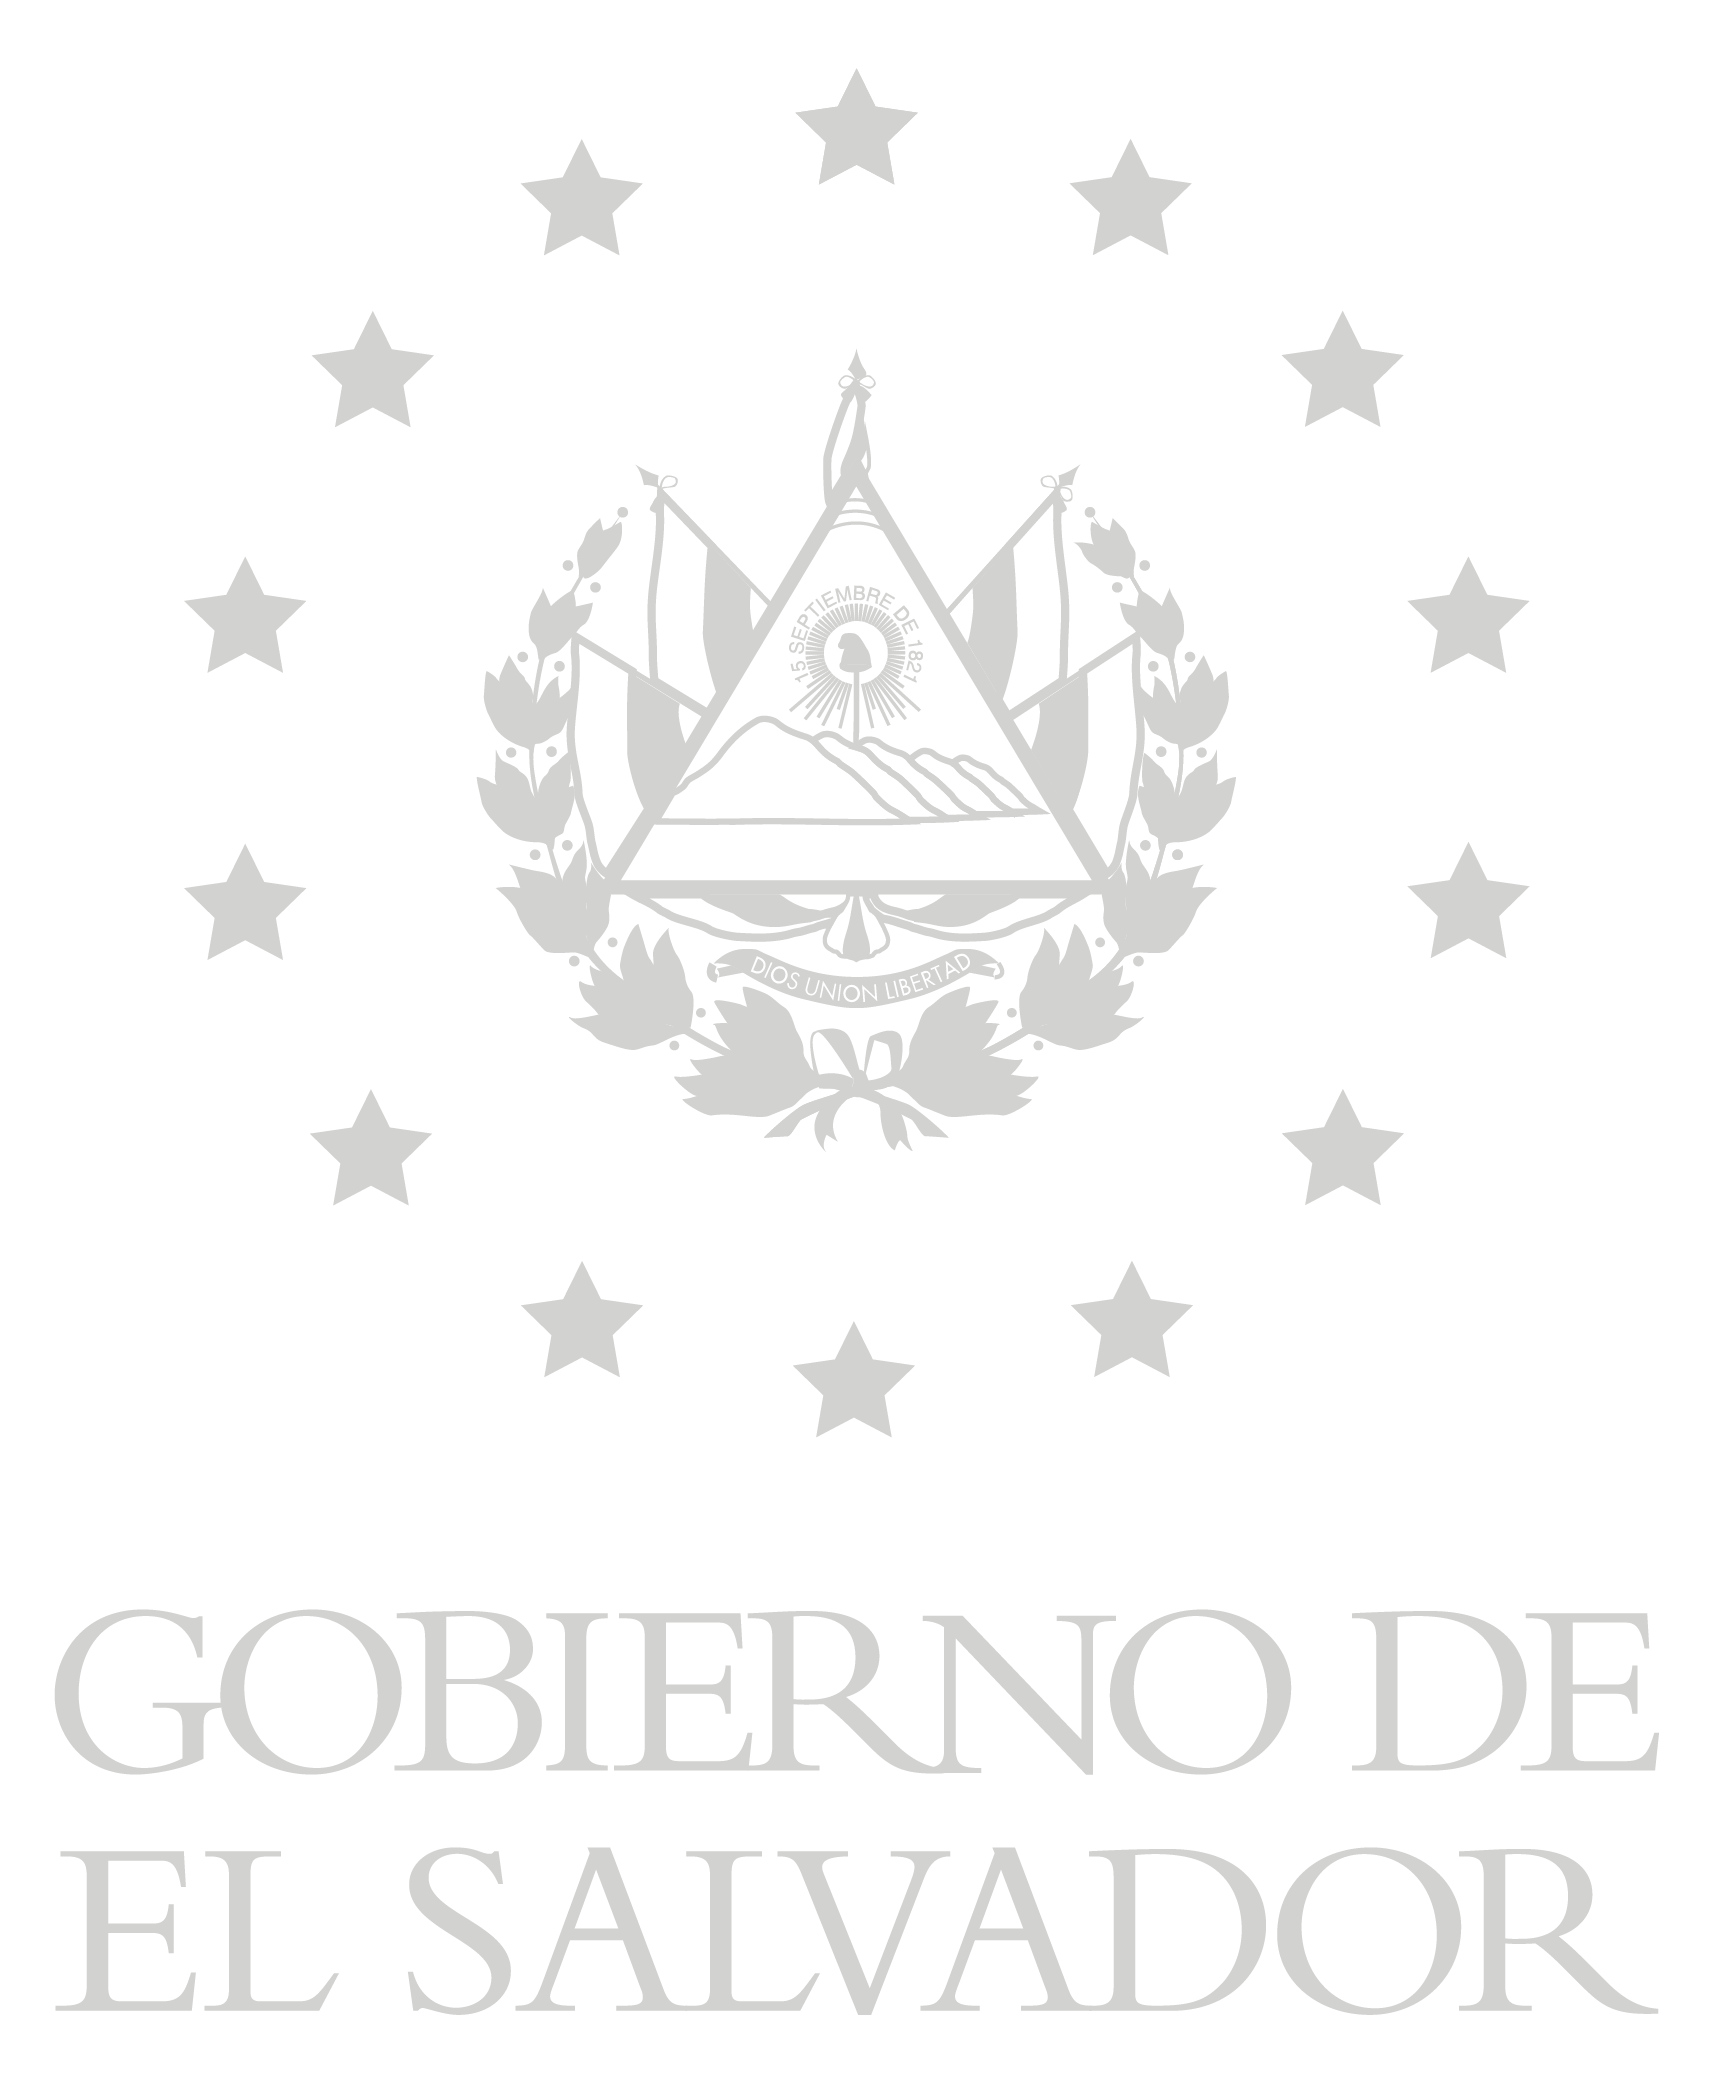 Gobierno de El Salvador